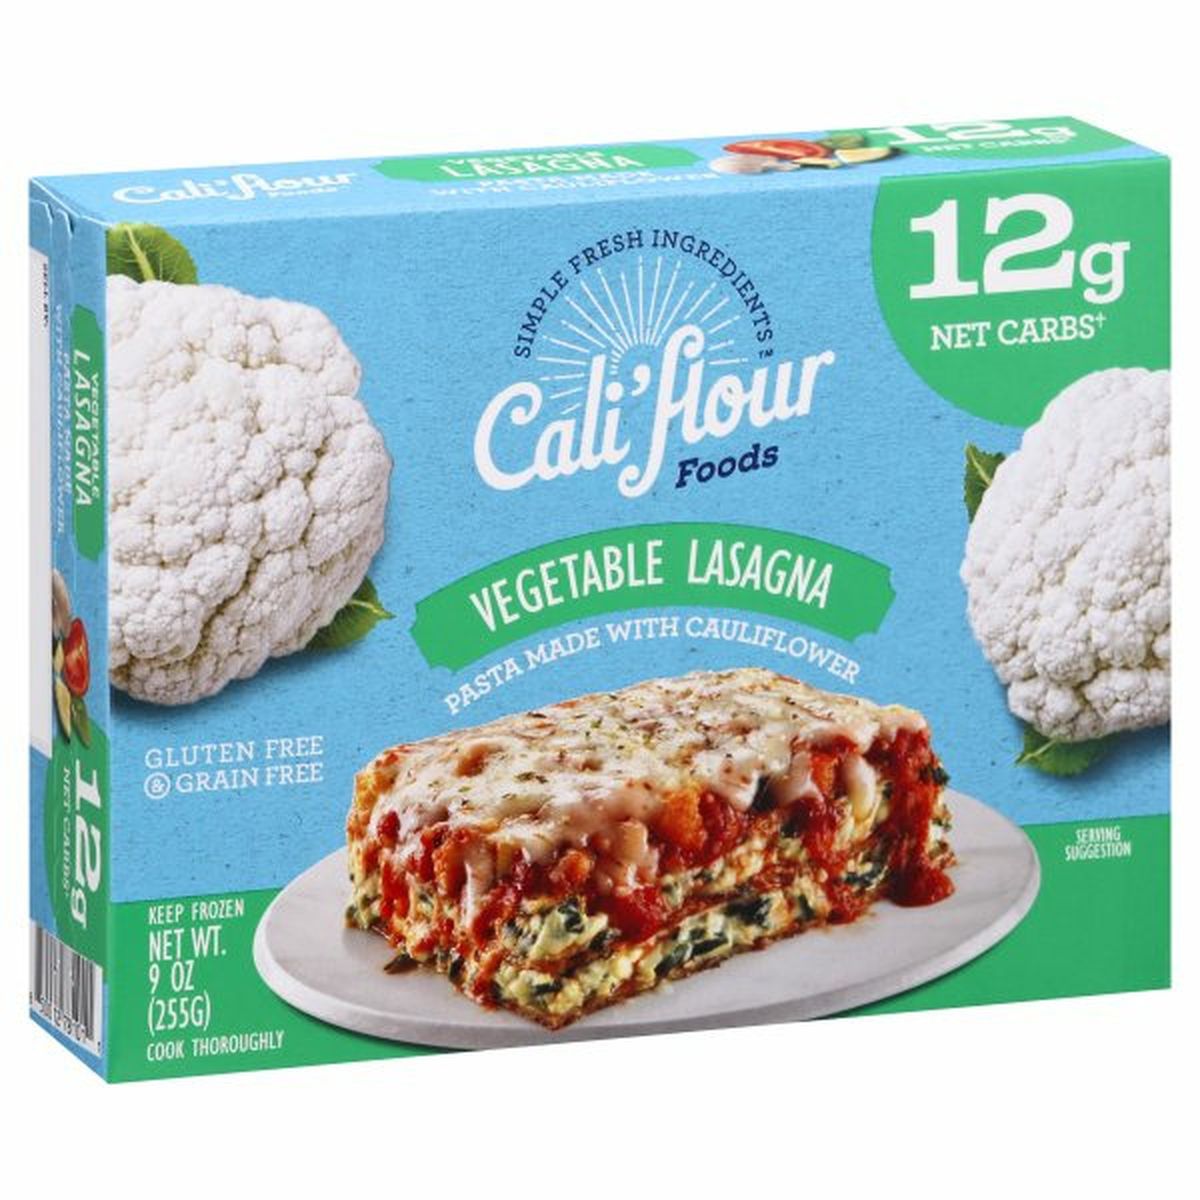 Calories in Cali'flour Foods Vegetable Lasagna